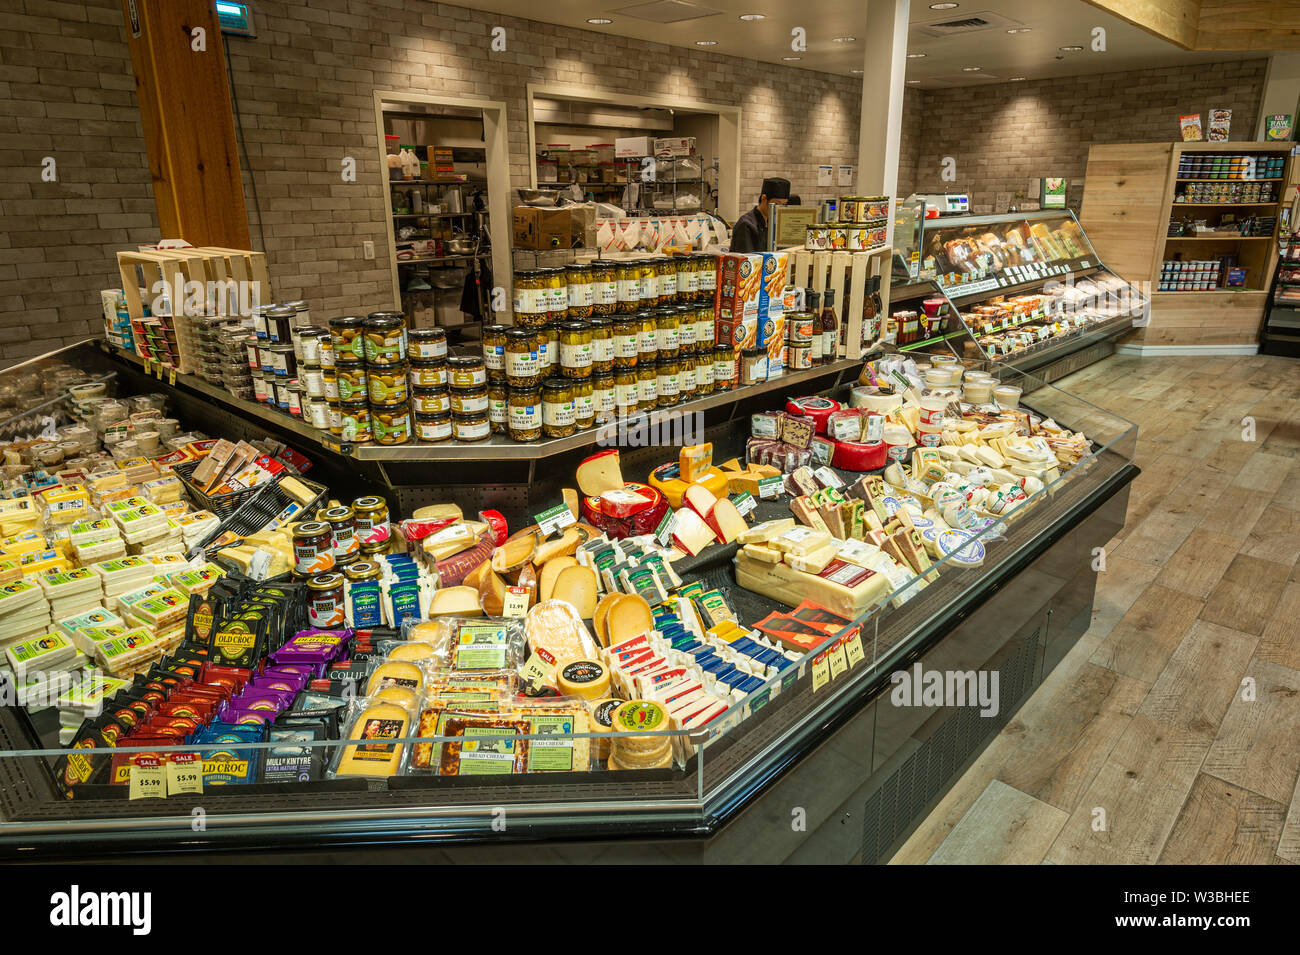 Gran pantalla de queso en el Supermercado americano Foto de stock